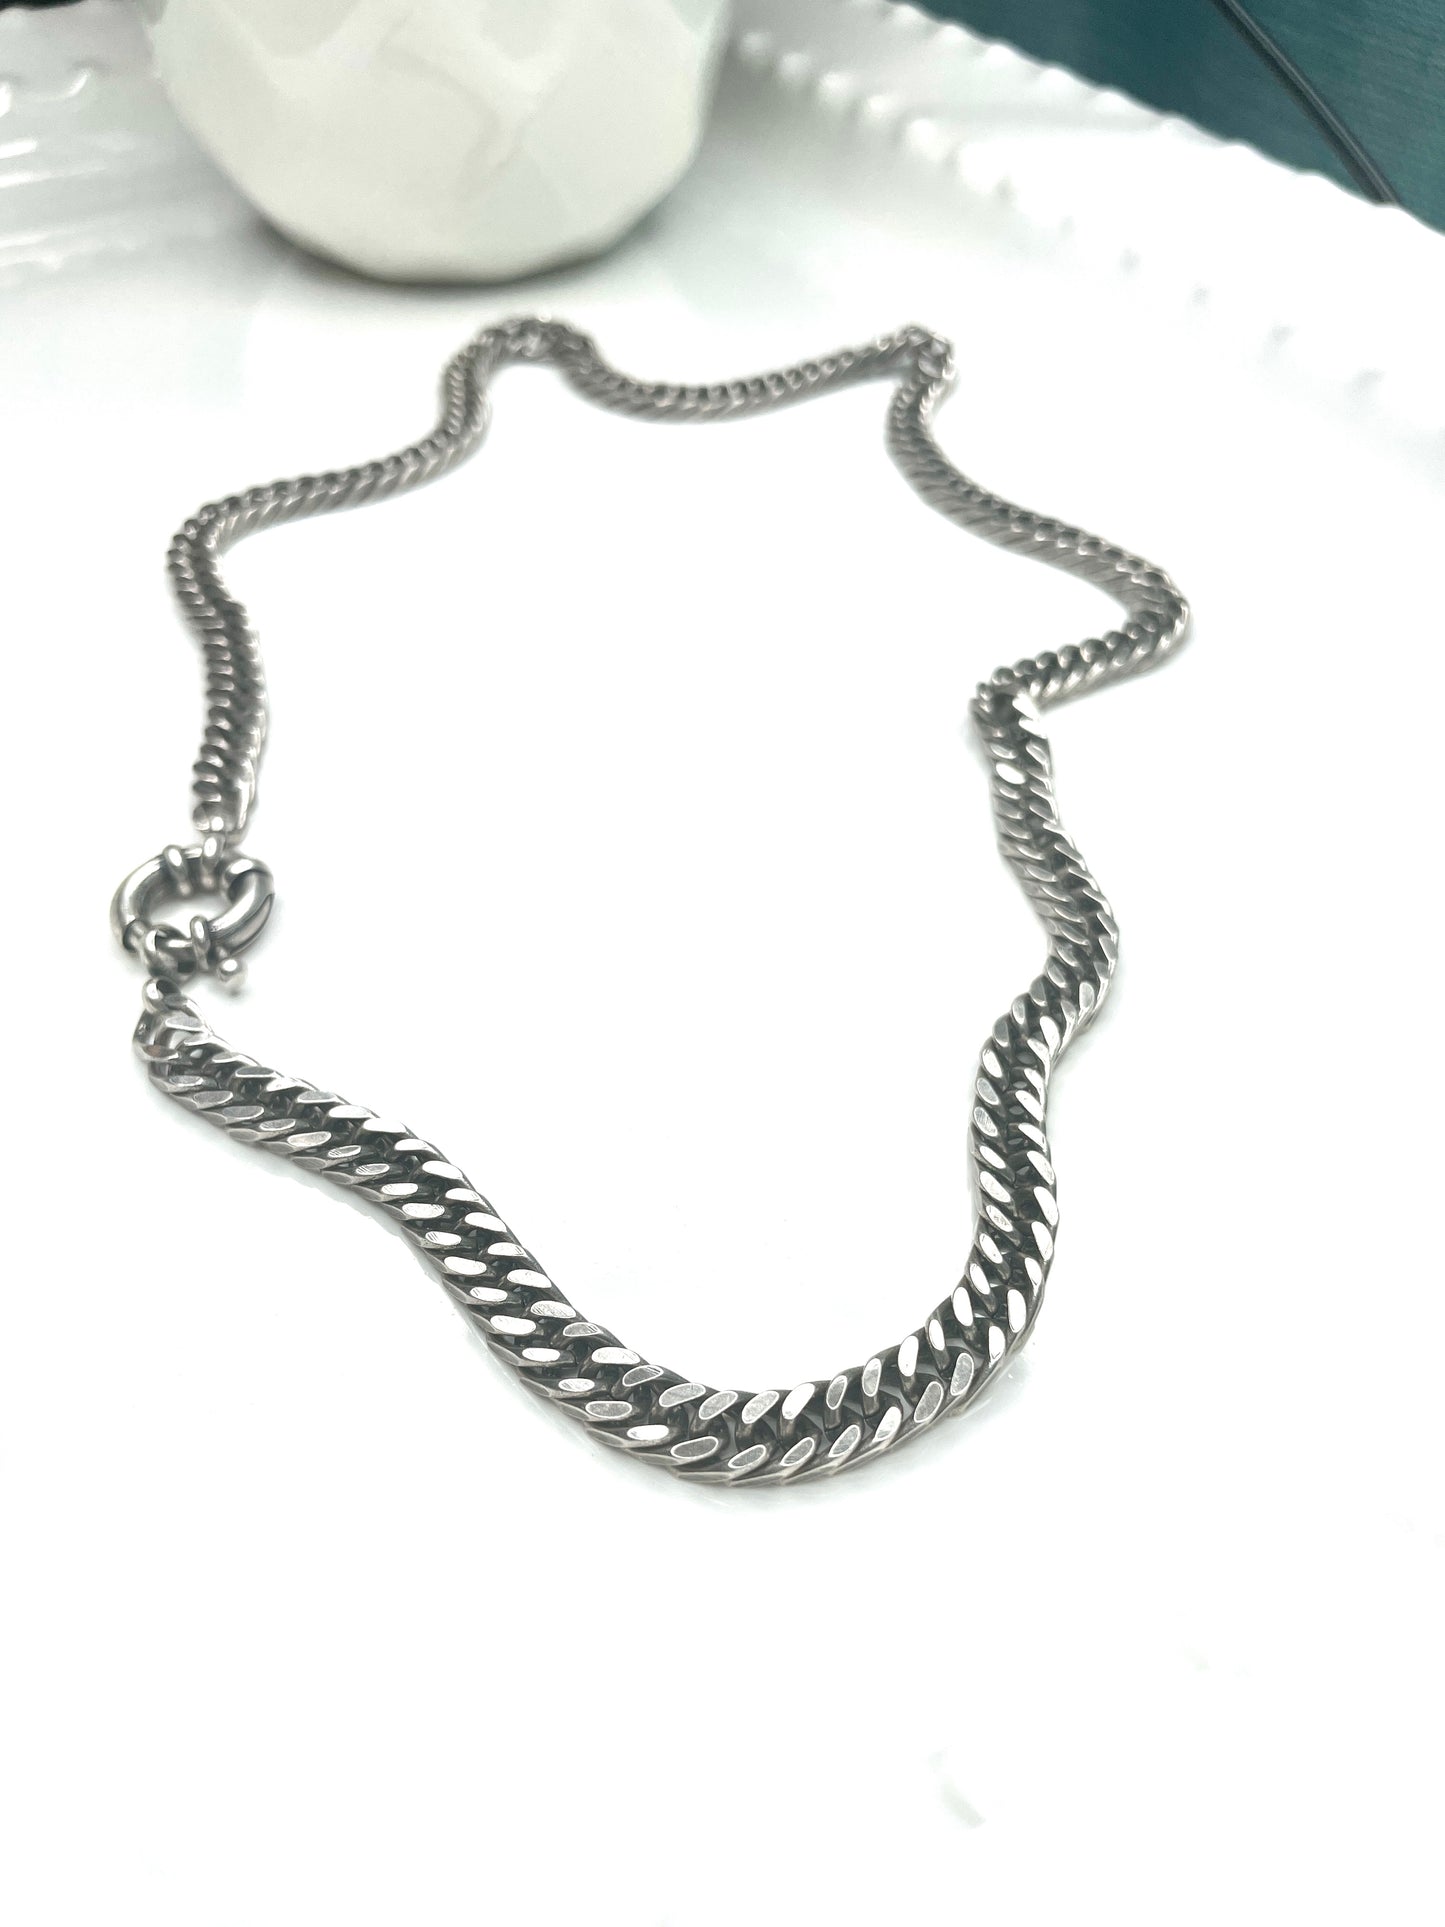 Chunky Wrap/ Bracelet Necklace